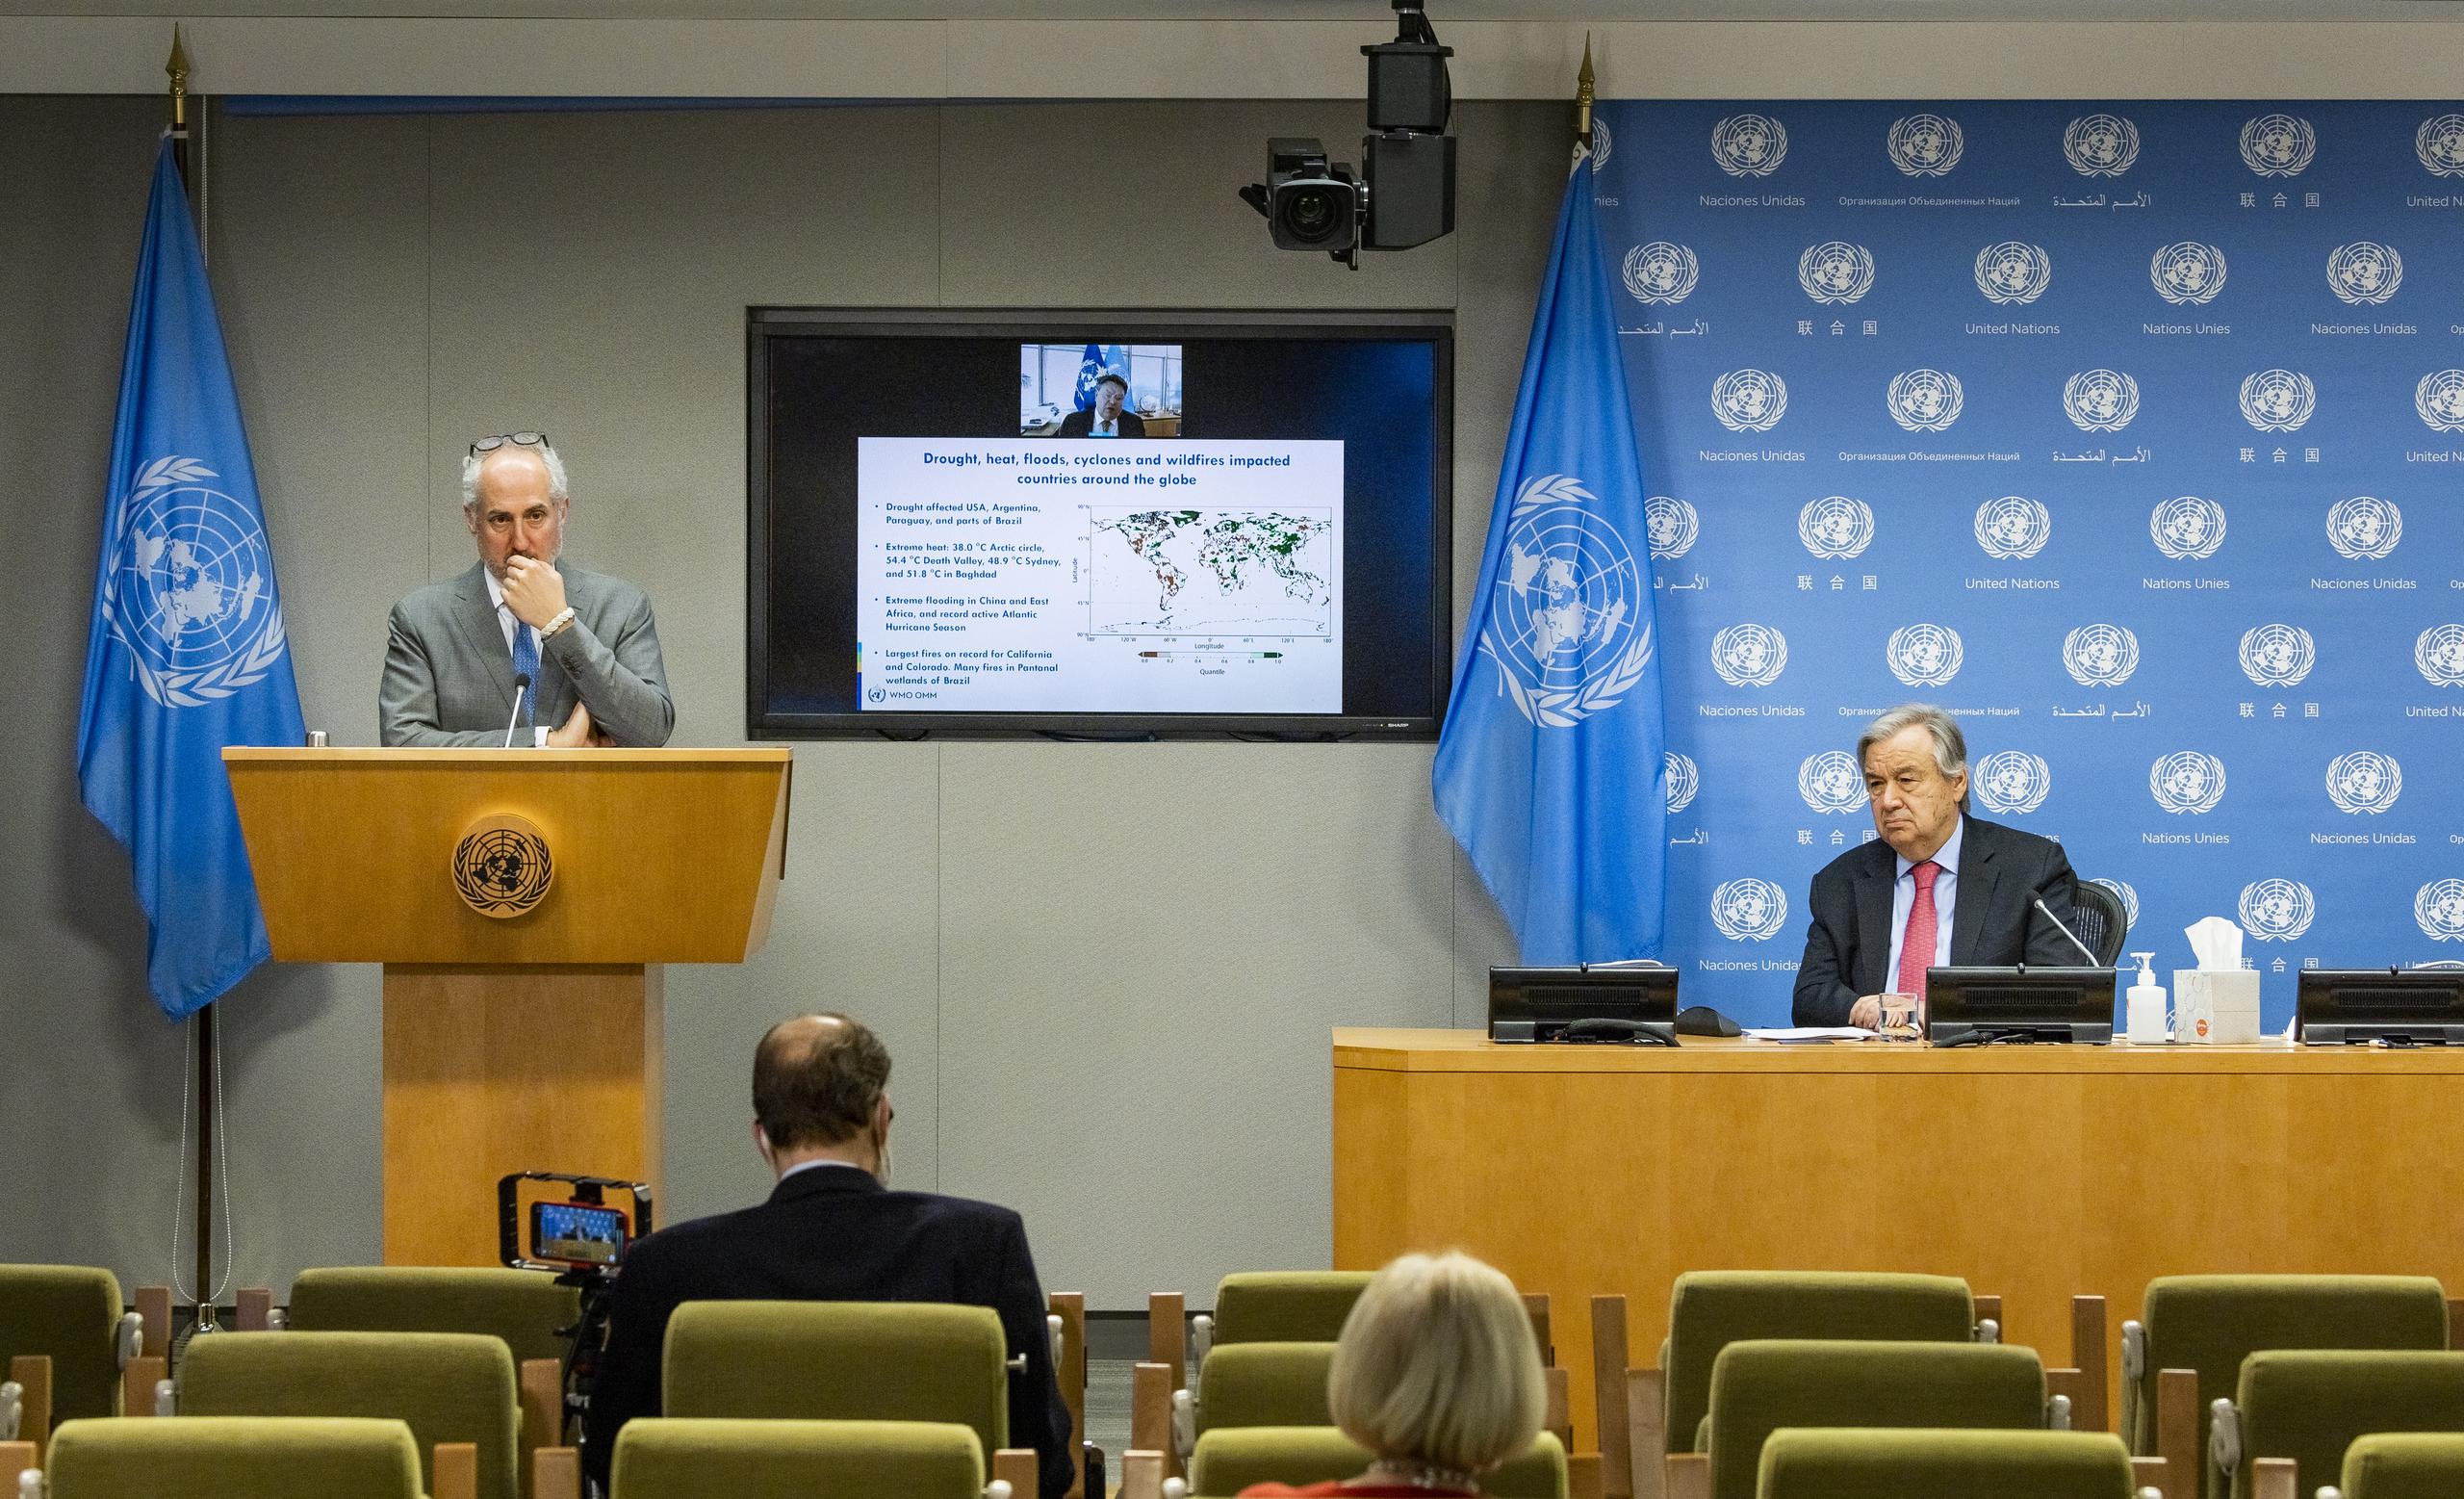 La ONU dijo estar preocupada por las imágenes porque "todo el mundo tiene derecho a la dignidad humana".